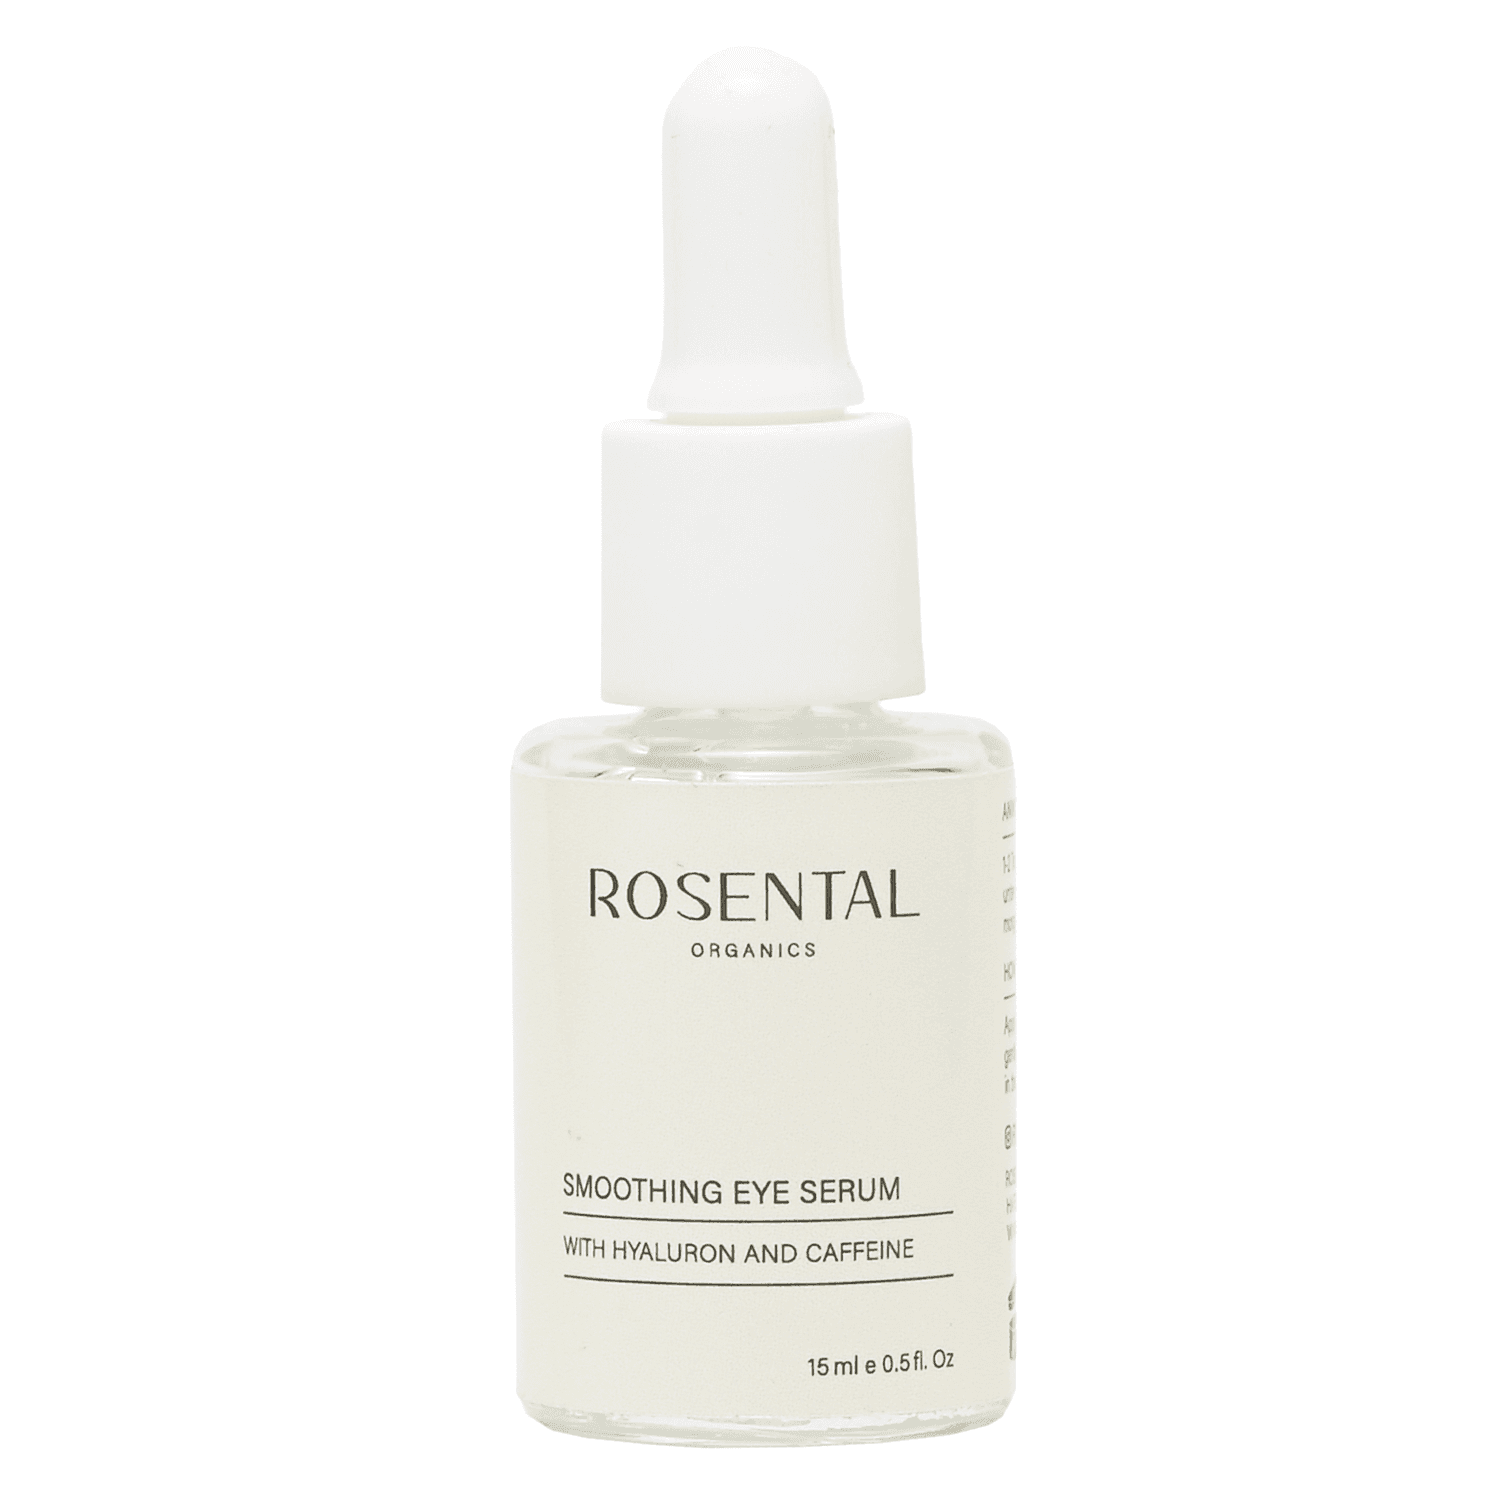 Rosental Face Care - Smoothing Eye Serum